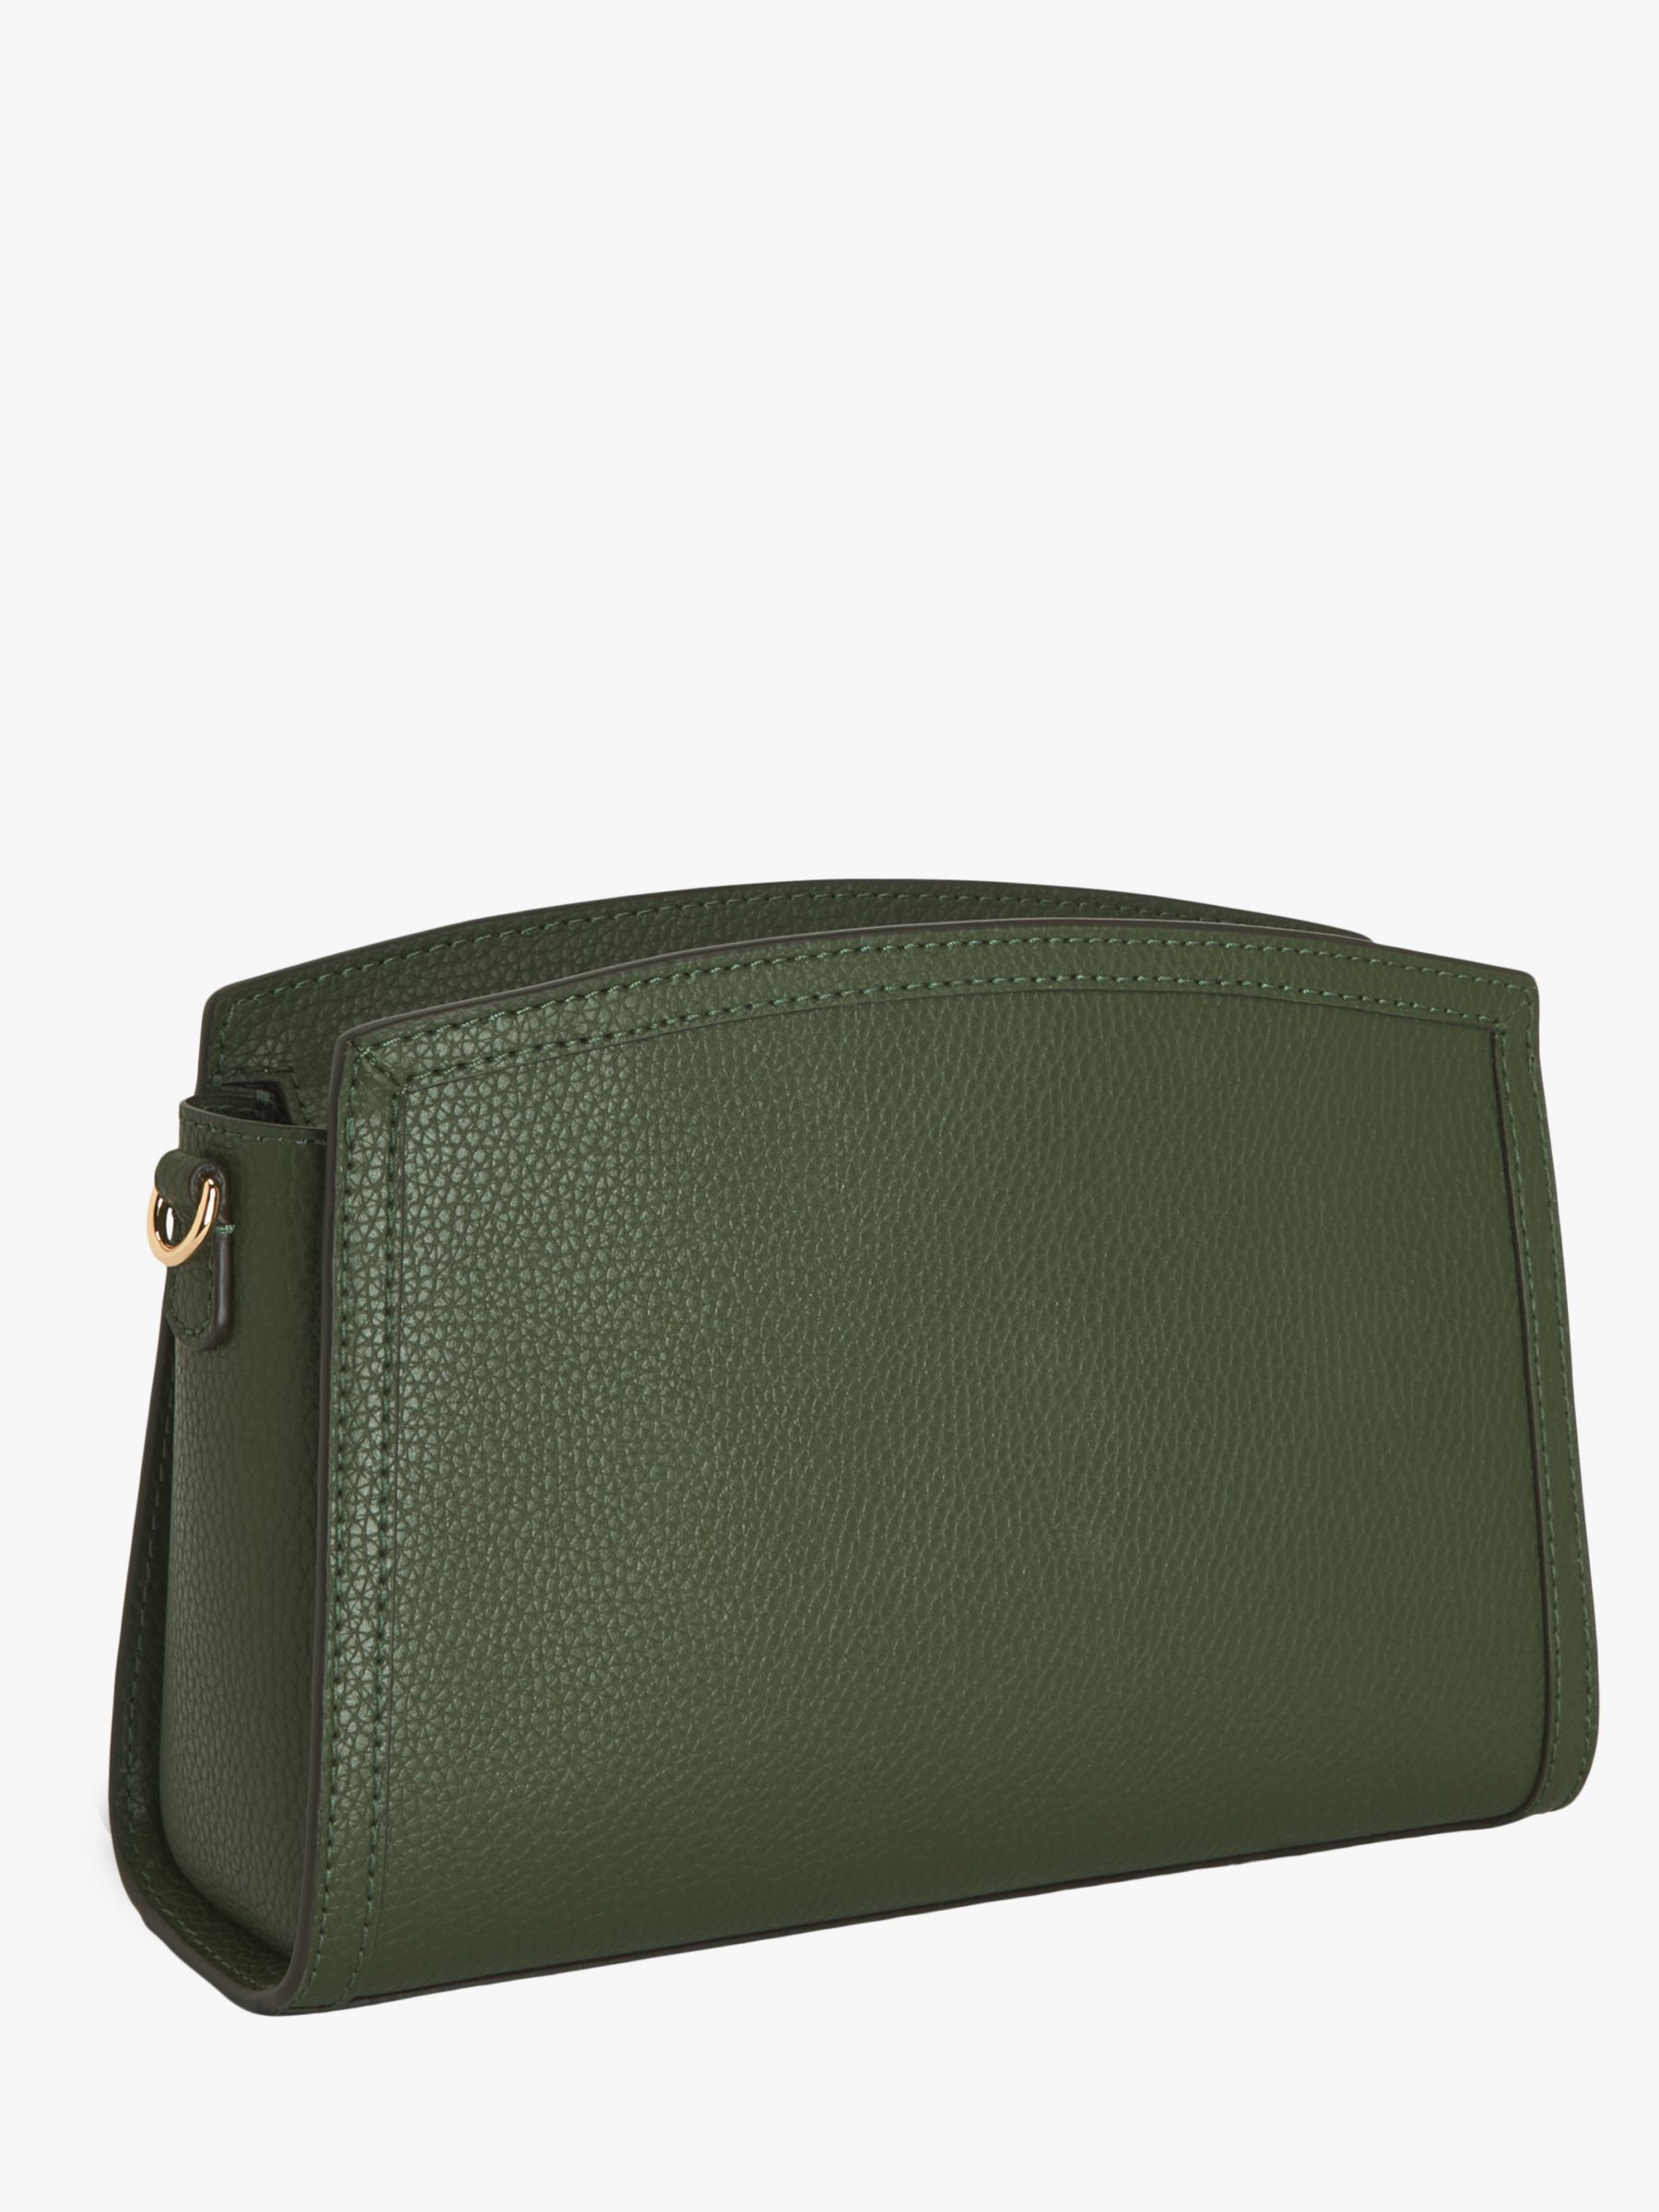 MICHAEL Michael Kors Small Green Leather Chantal Bag